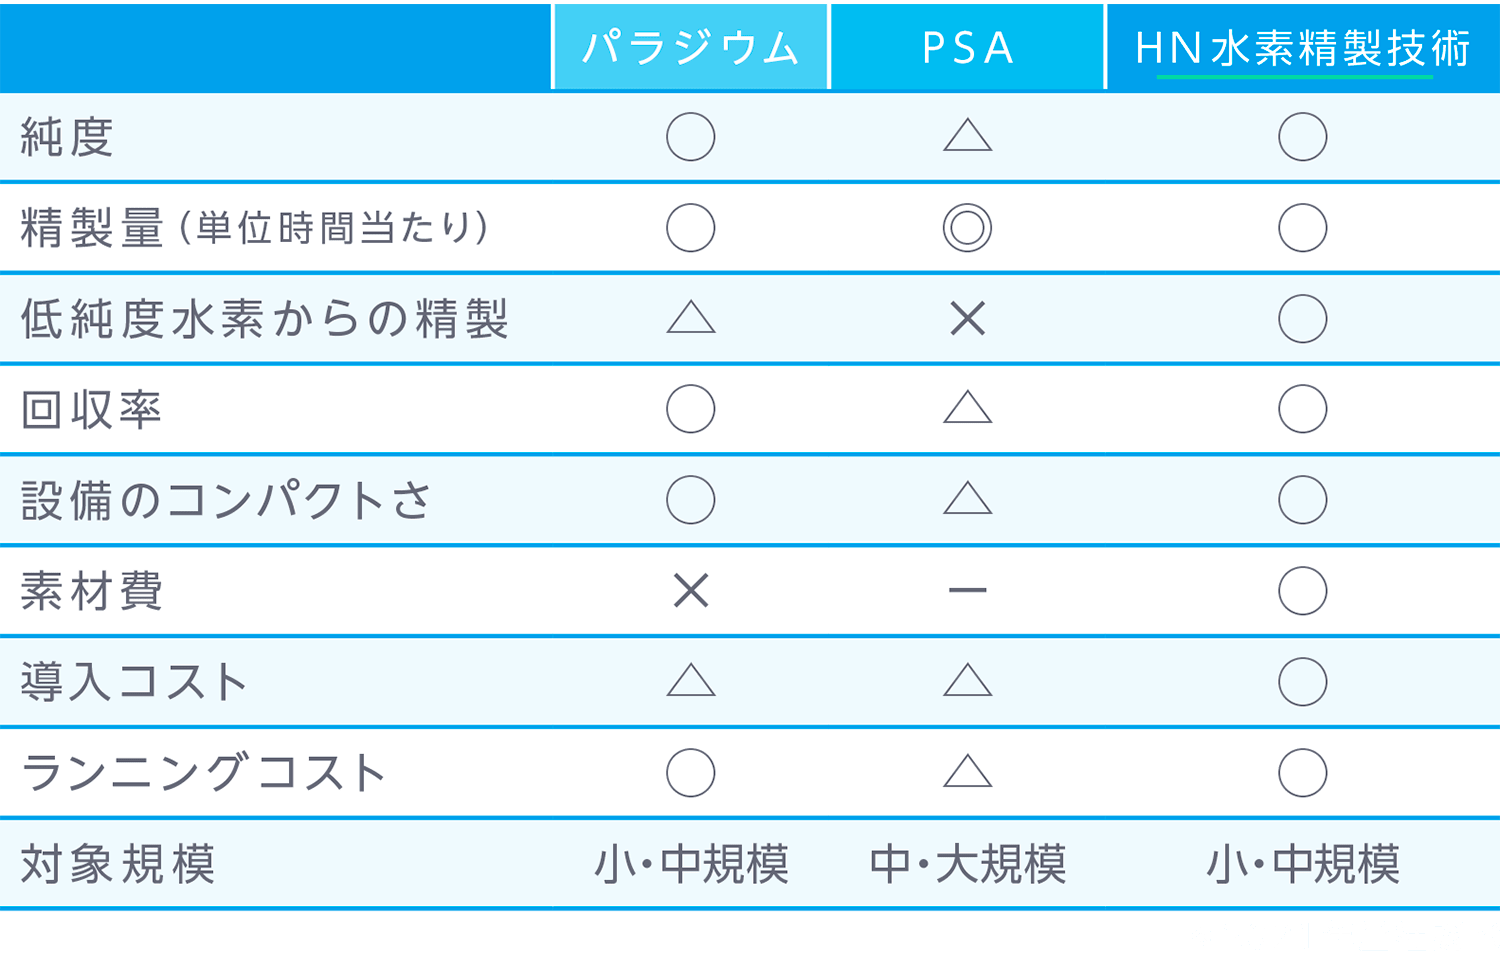 HN水素精製技術 比較表